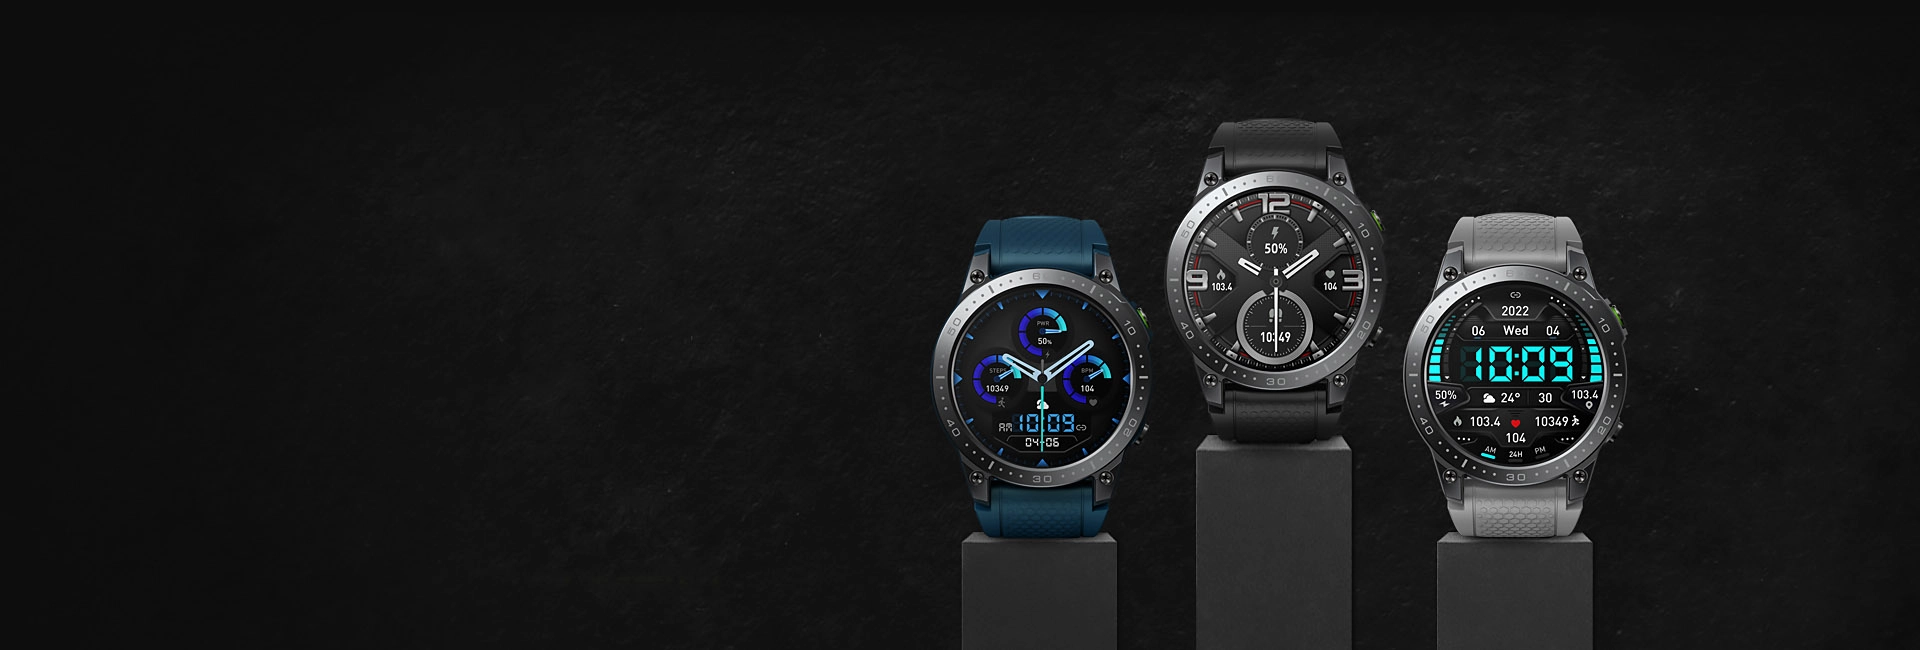 Zeblaze Ares 3 Pro Smartwatches